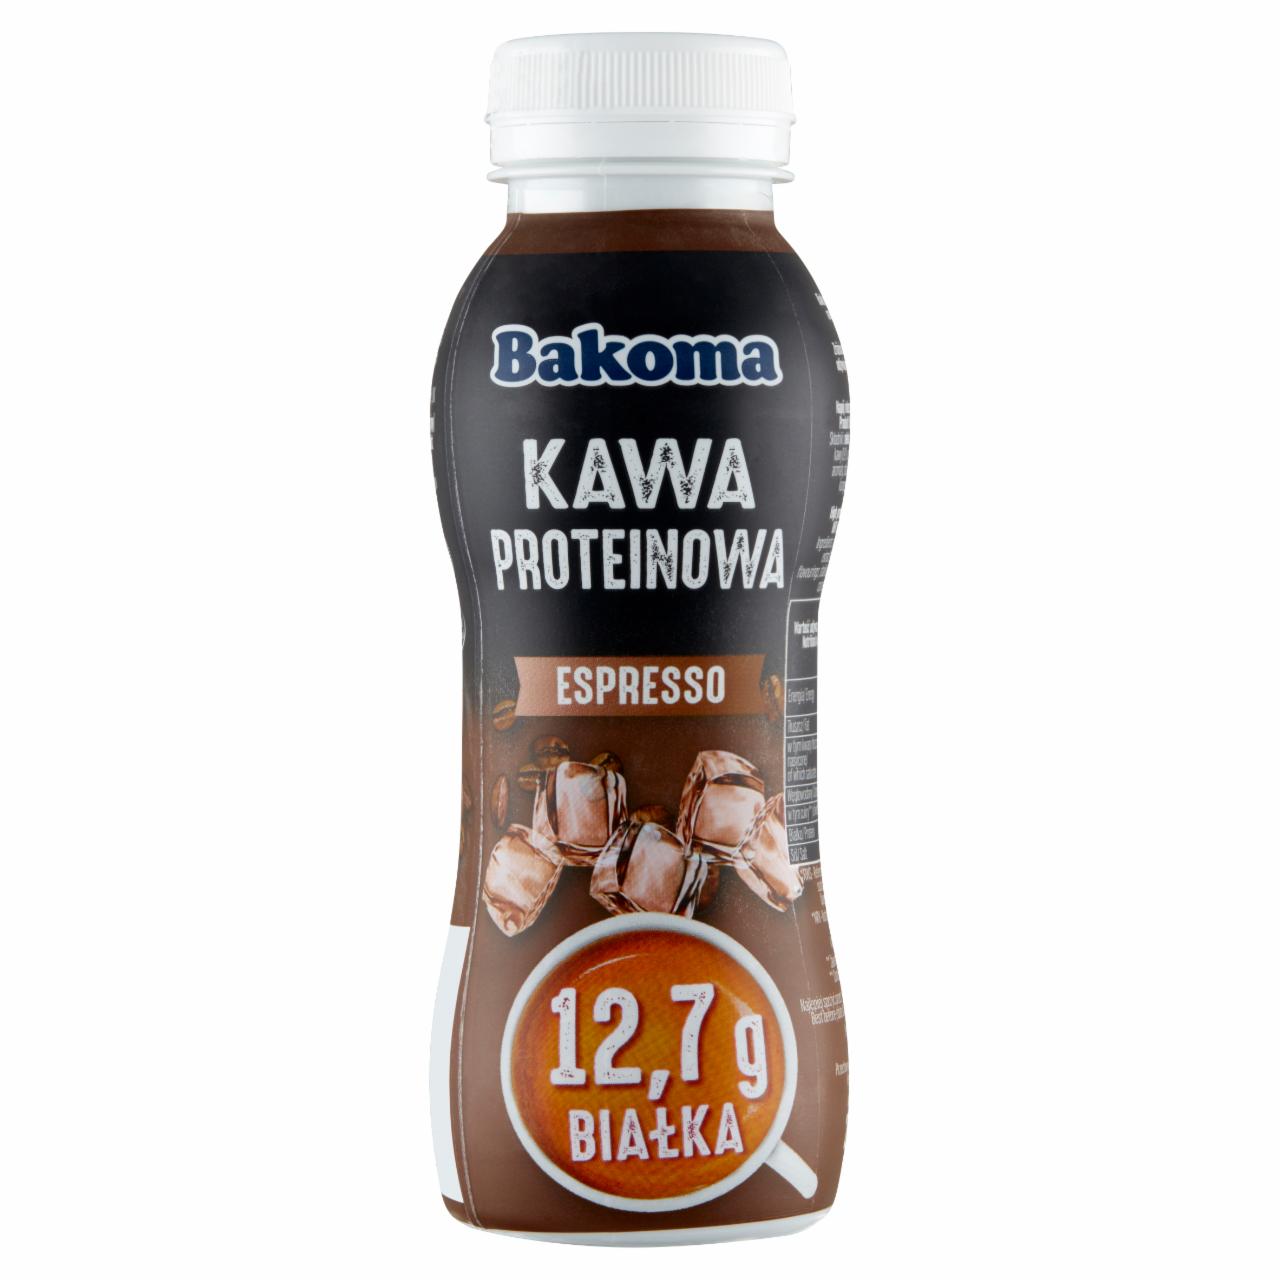 Zdjęcia - Bakoma Espresso Kawa proteinowa 240 g